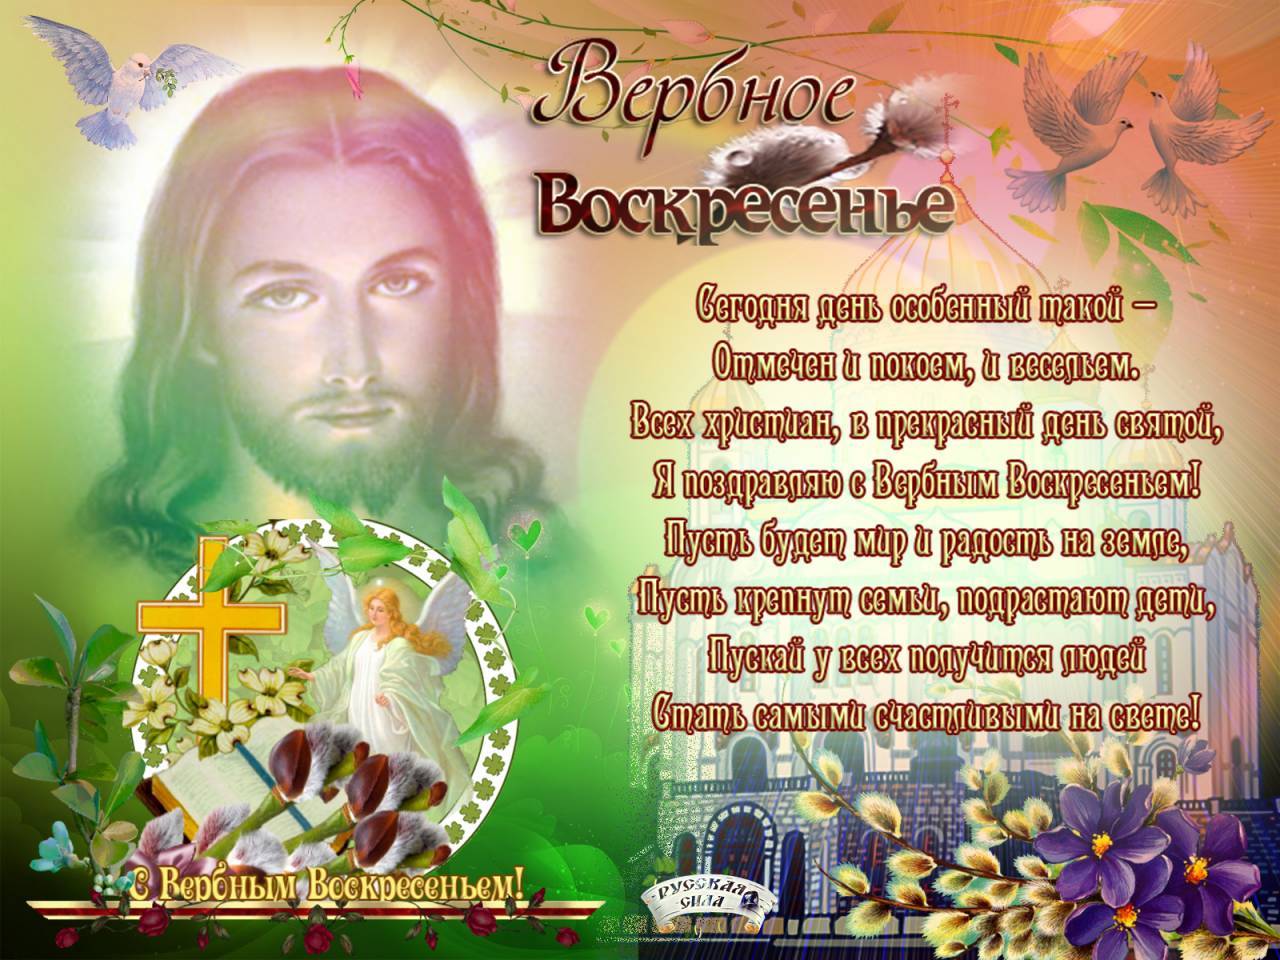 Где можно взять бесплатные открытки для поздравления друзей в Одноклассниках